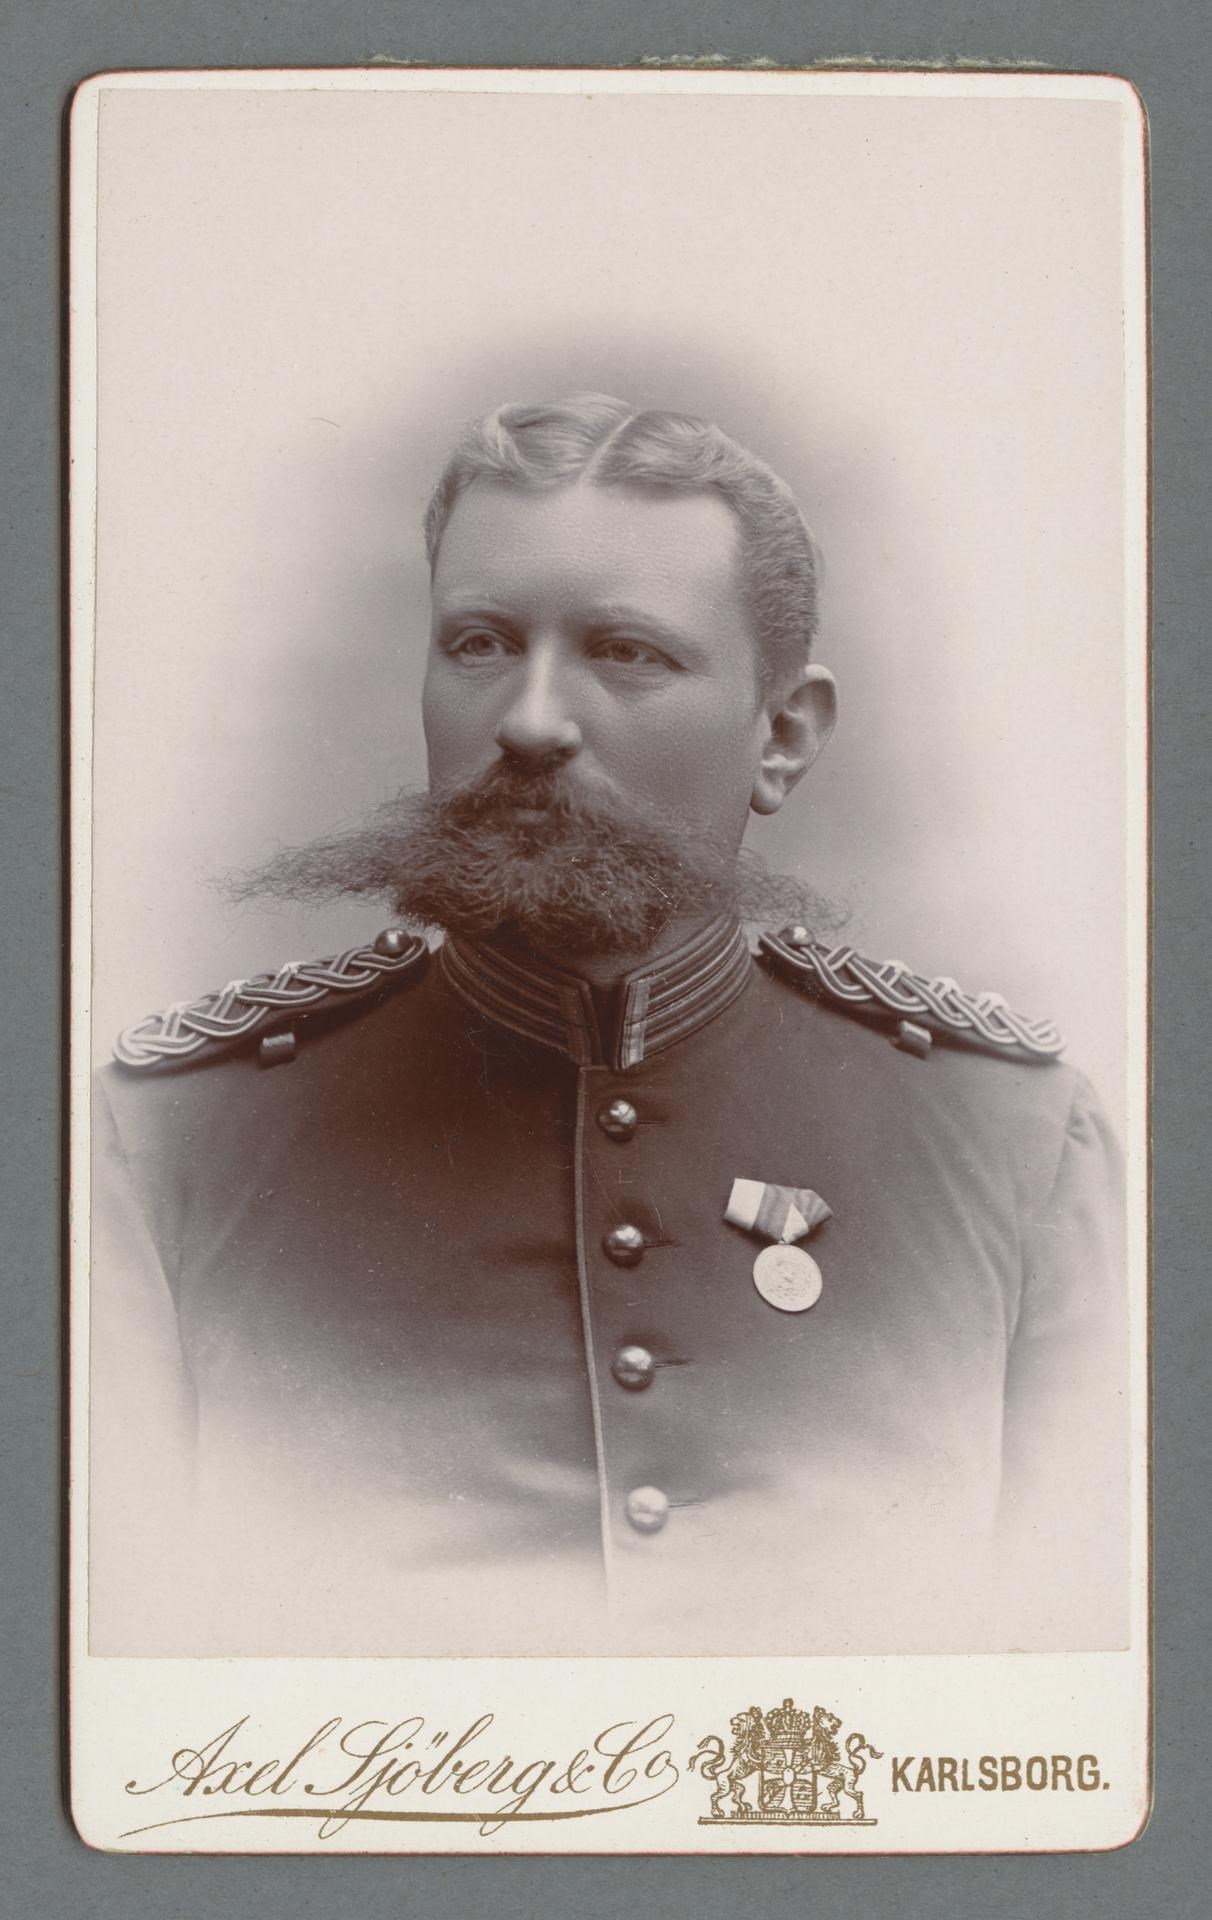 Bystporträtt av Gustaf Fleetwood iklädd uniform med distinkt kammad mittbena och stort skägg med mustasch.